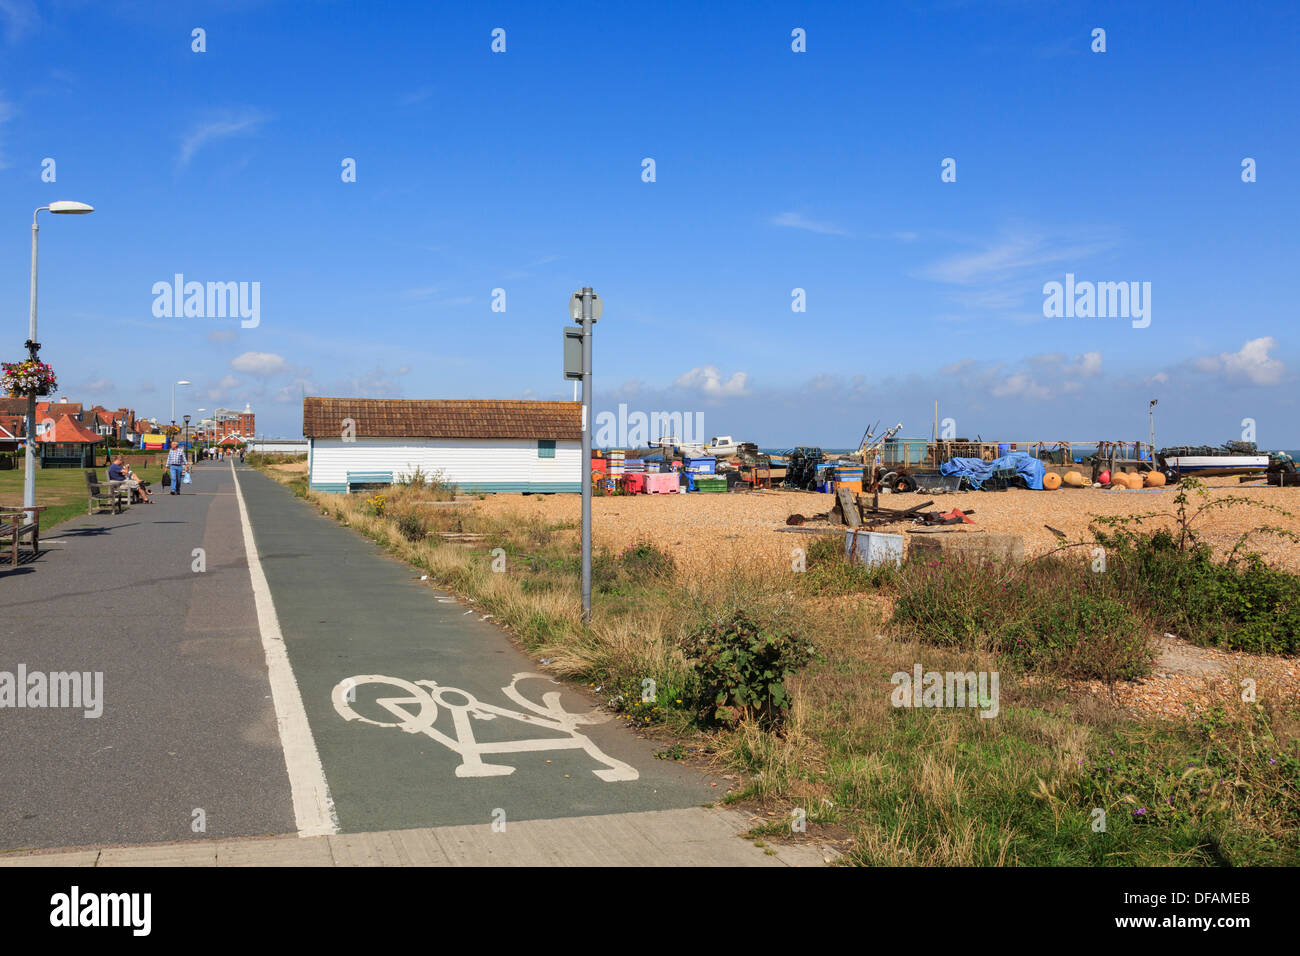 Red nacional de ciclo ruta 1 con el signo en el paseo marítimo de la playa de Walmer en Deal, Kent, Inglaterra, Reino Unido, Gran Bretaña Foto de stock